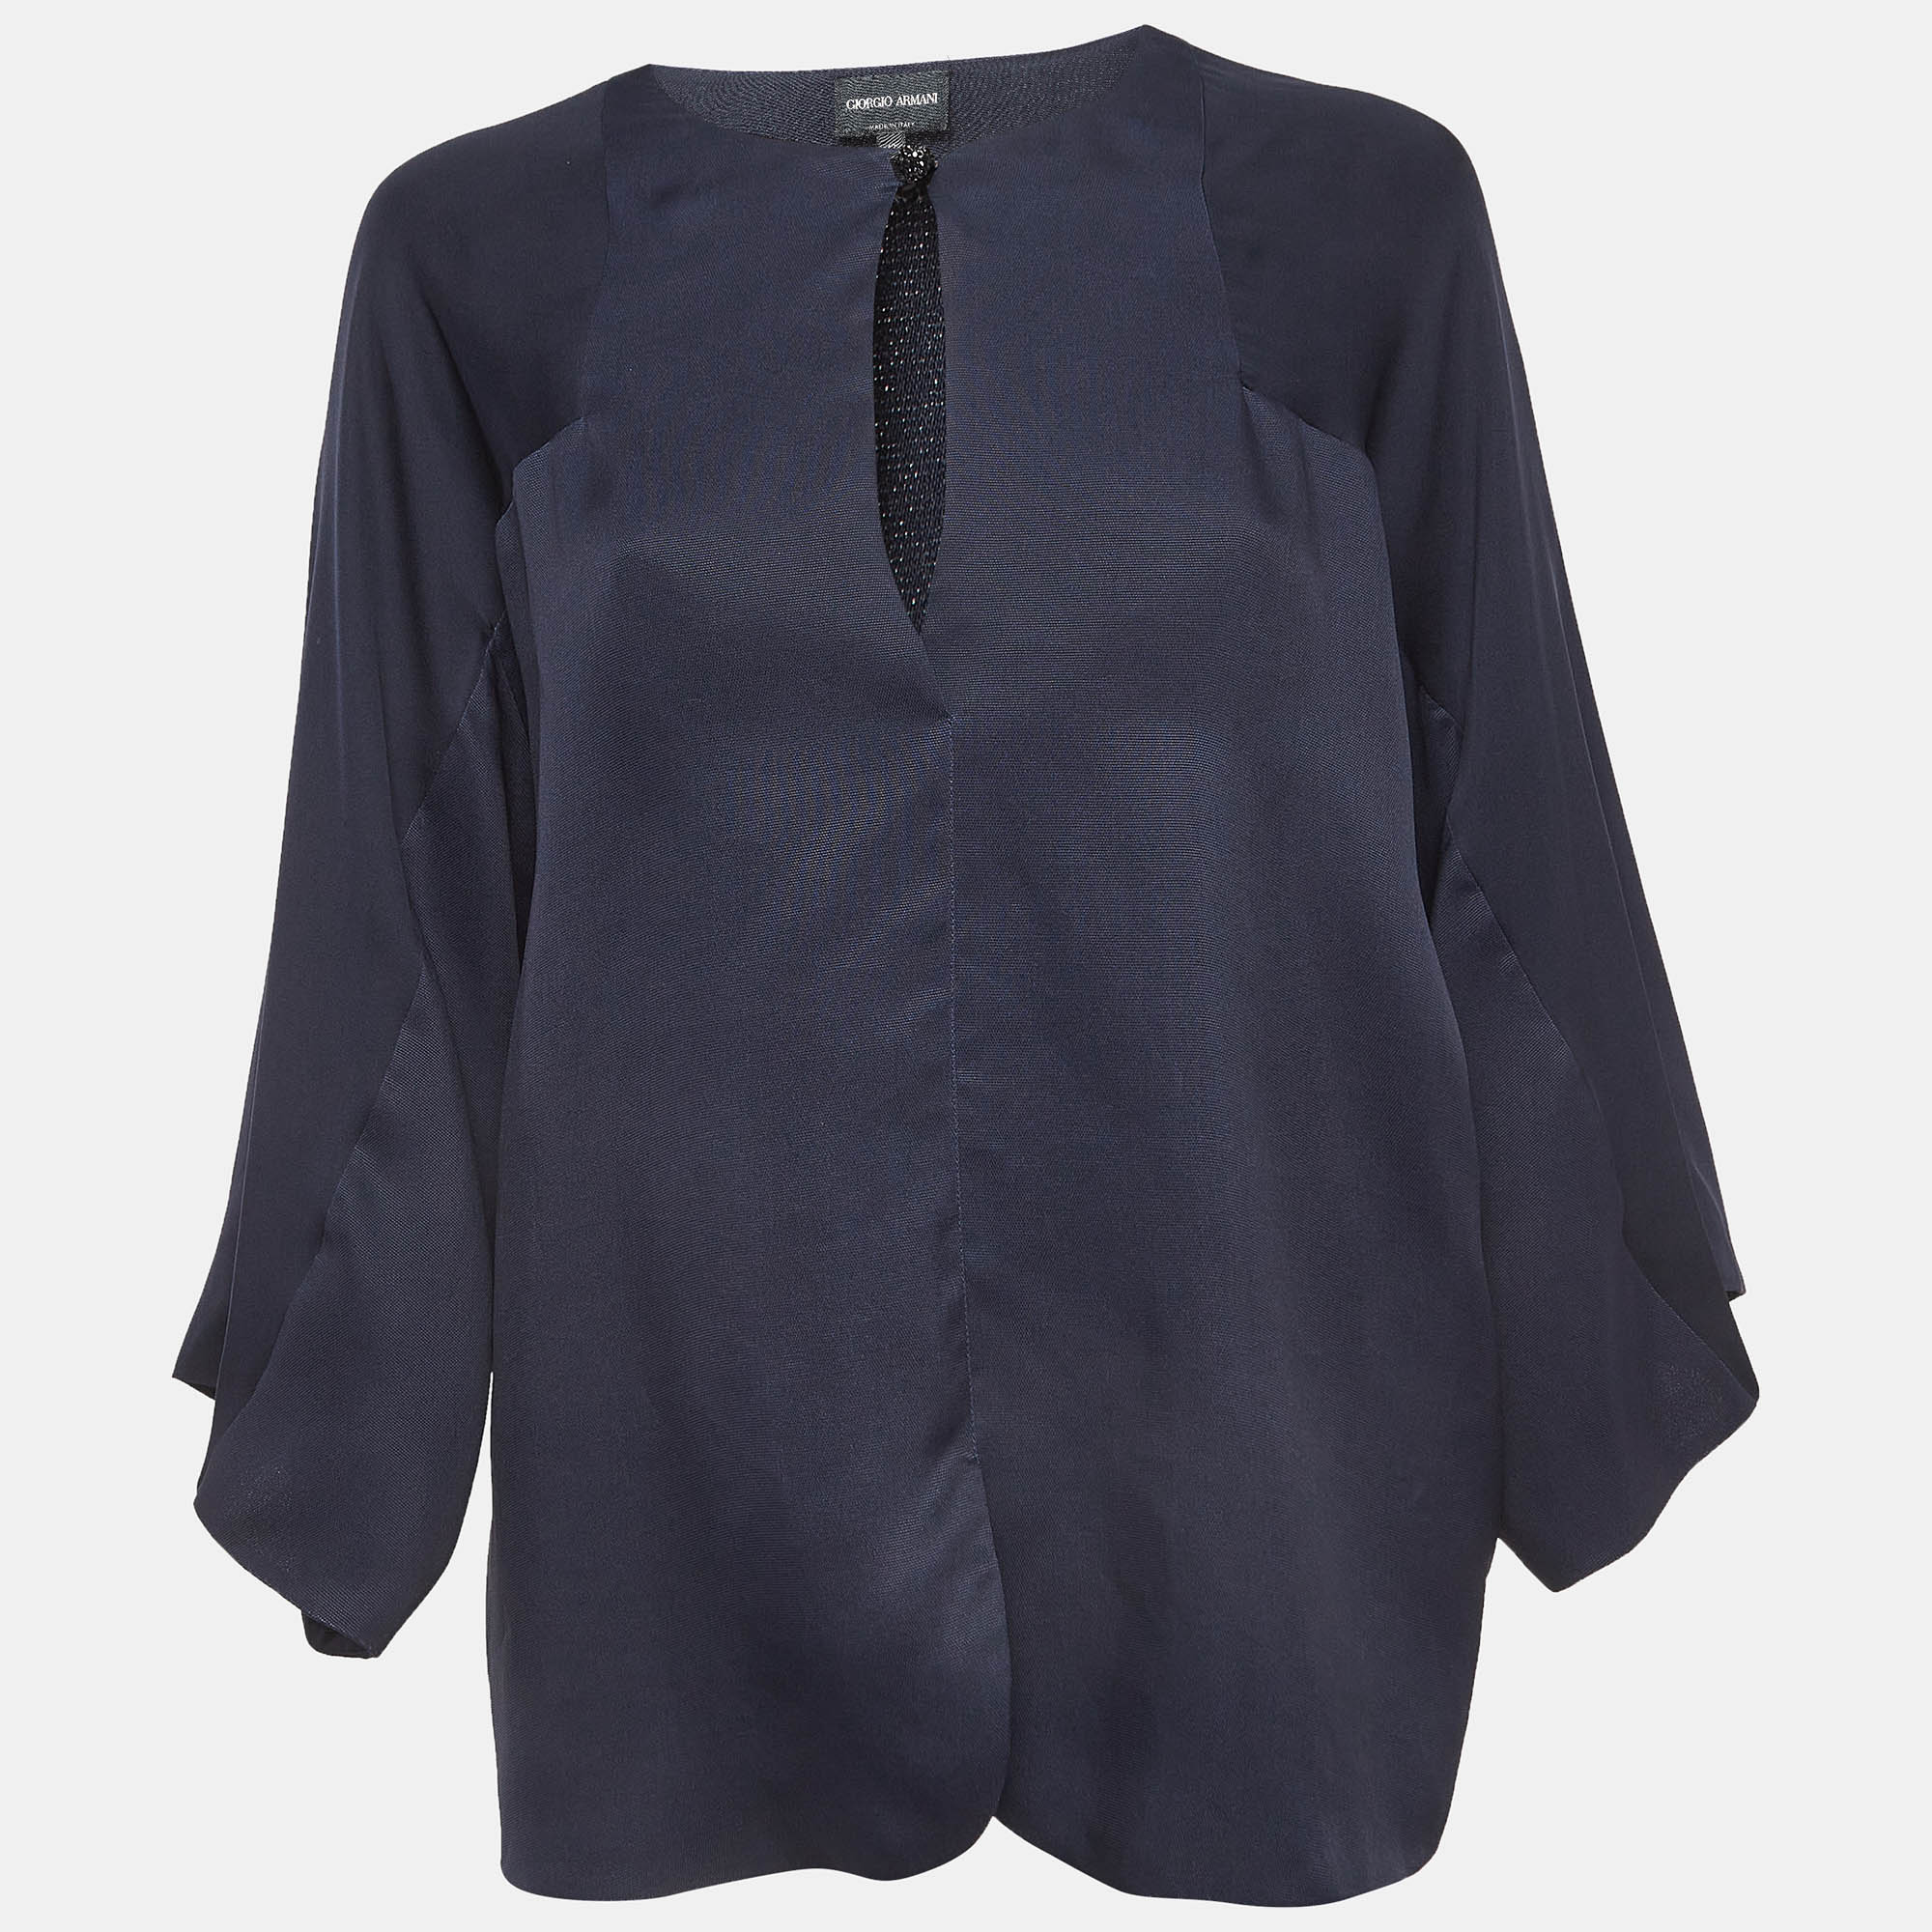 Giorgio armani navy blue silk kimono sleeve blouse m